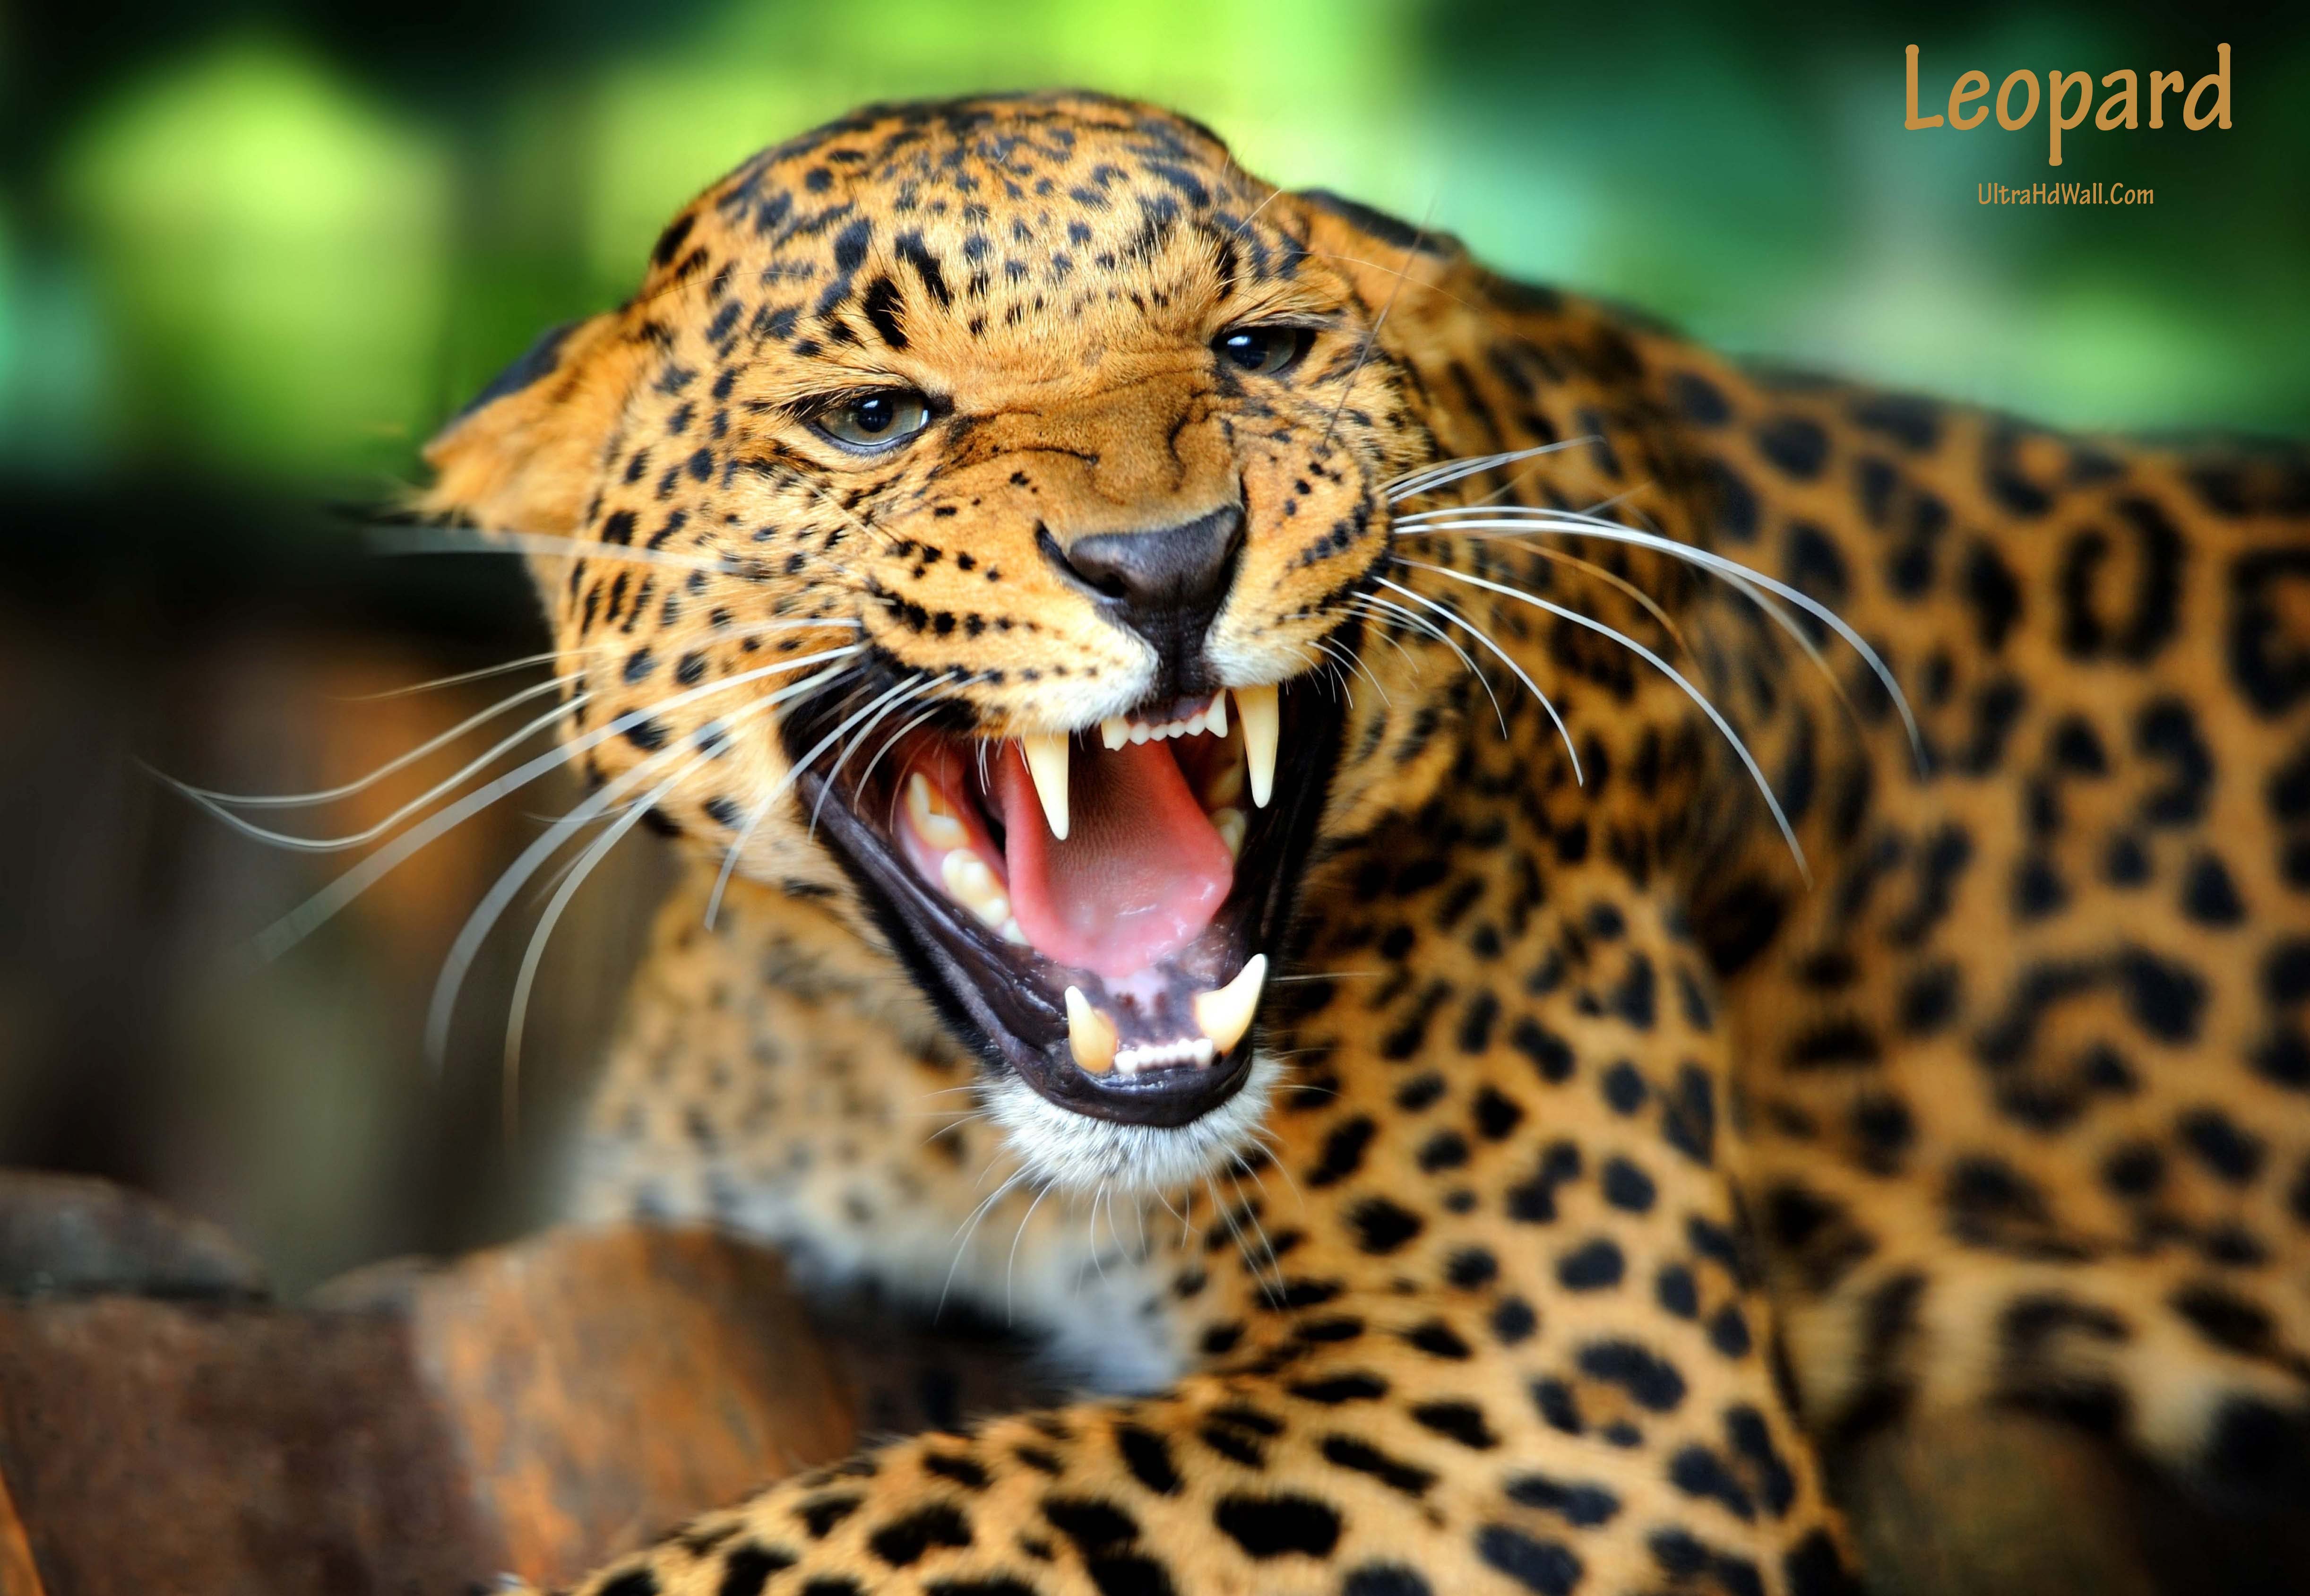 Leopard Wallpaper Ultra Hd Widescreen higher resolution Animal